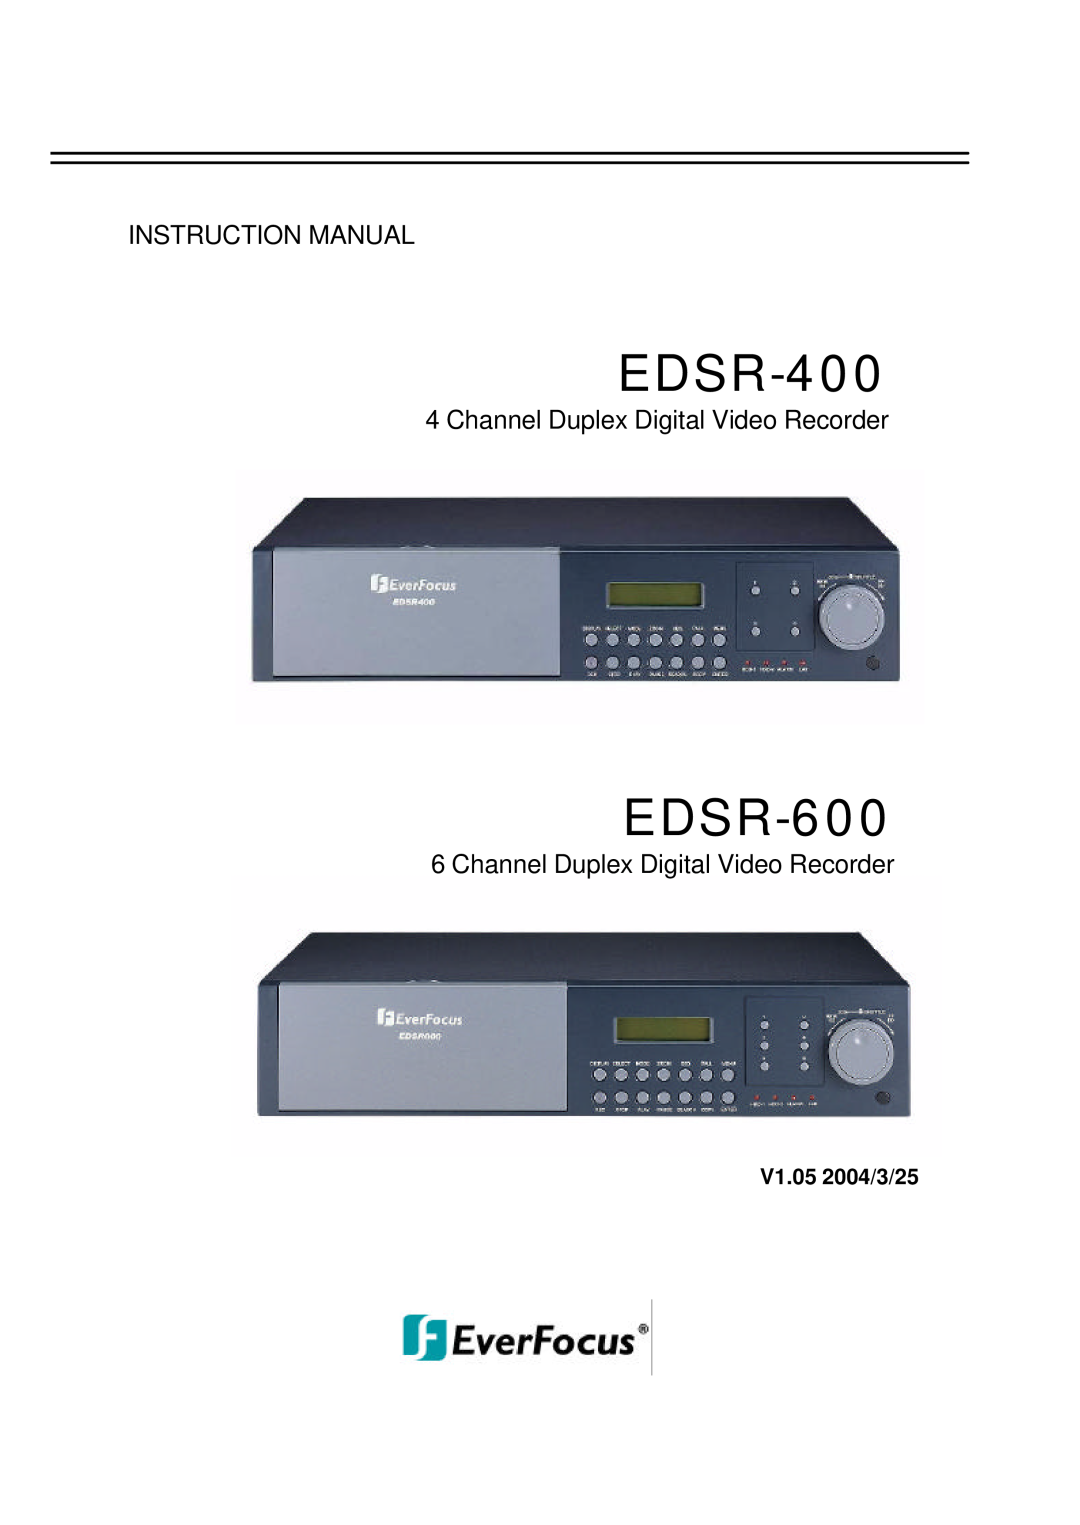 EverFocus EDSR-600 instruction manual Channel Duplex Digital Video Recorder, V1.05 2004/3/25, EDSR-400 